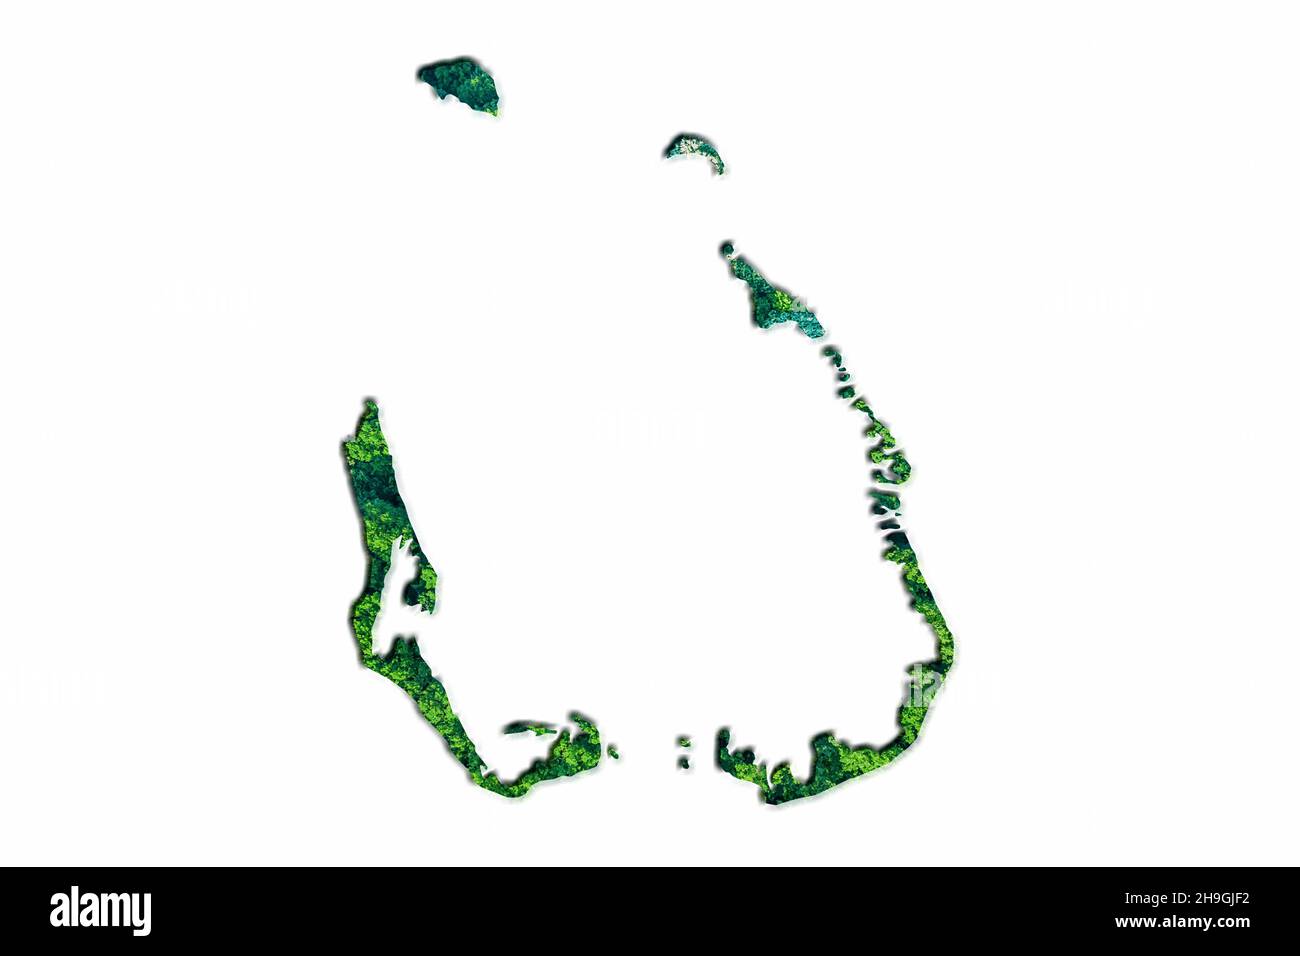 Green Forest carte des îles Cocos, sur fond blanc Banque D'Images